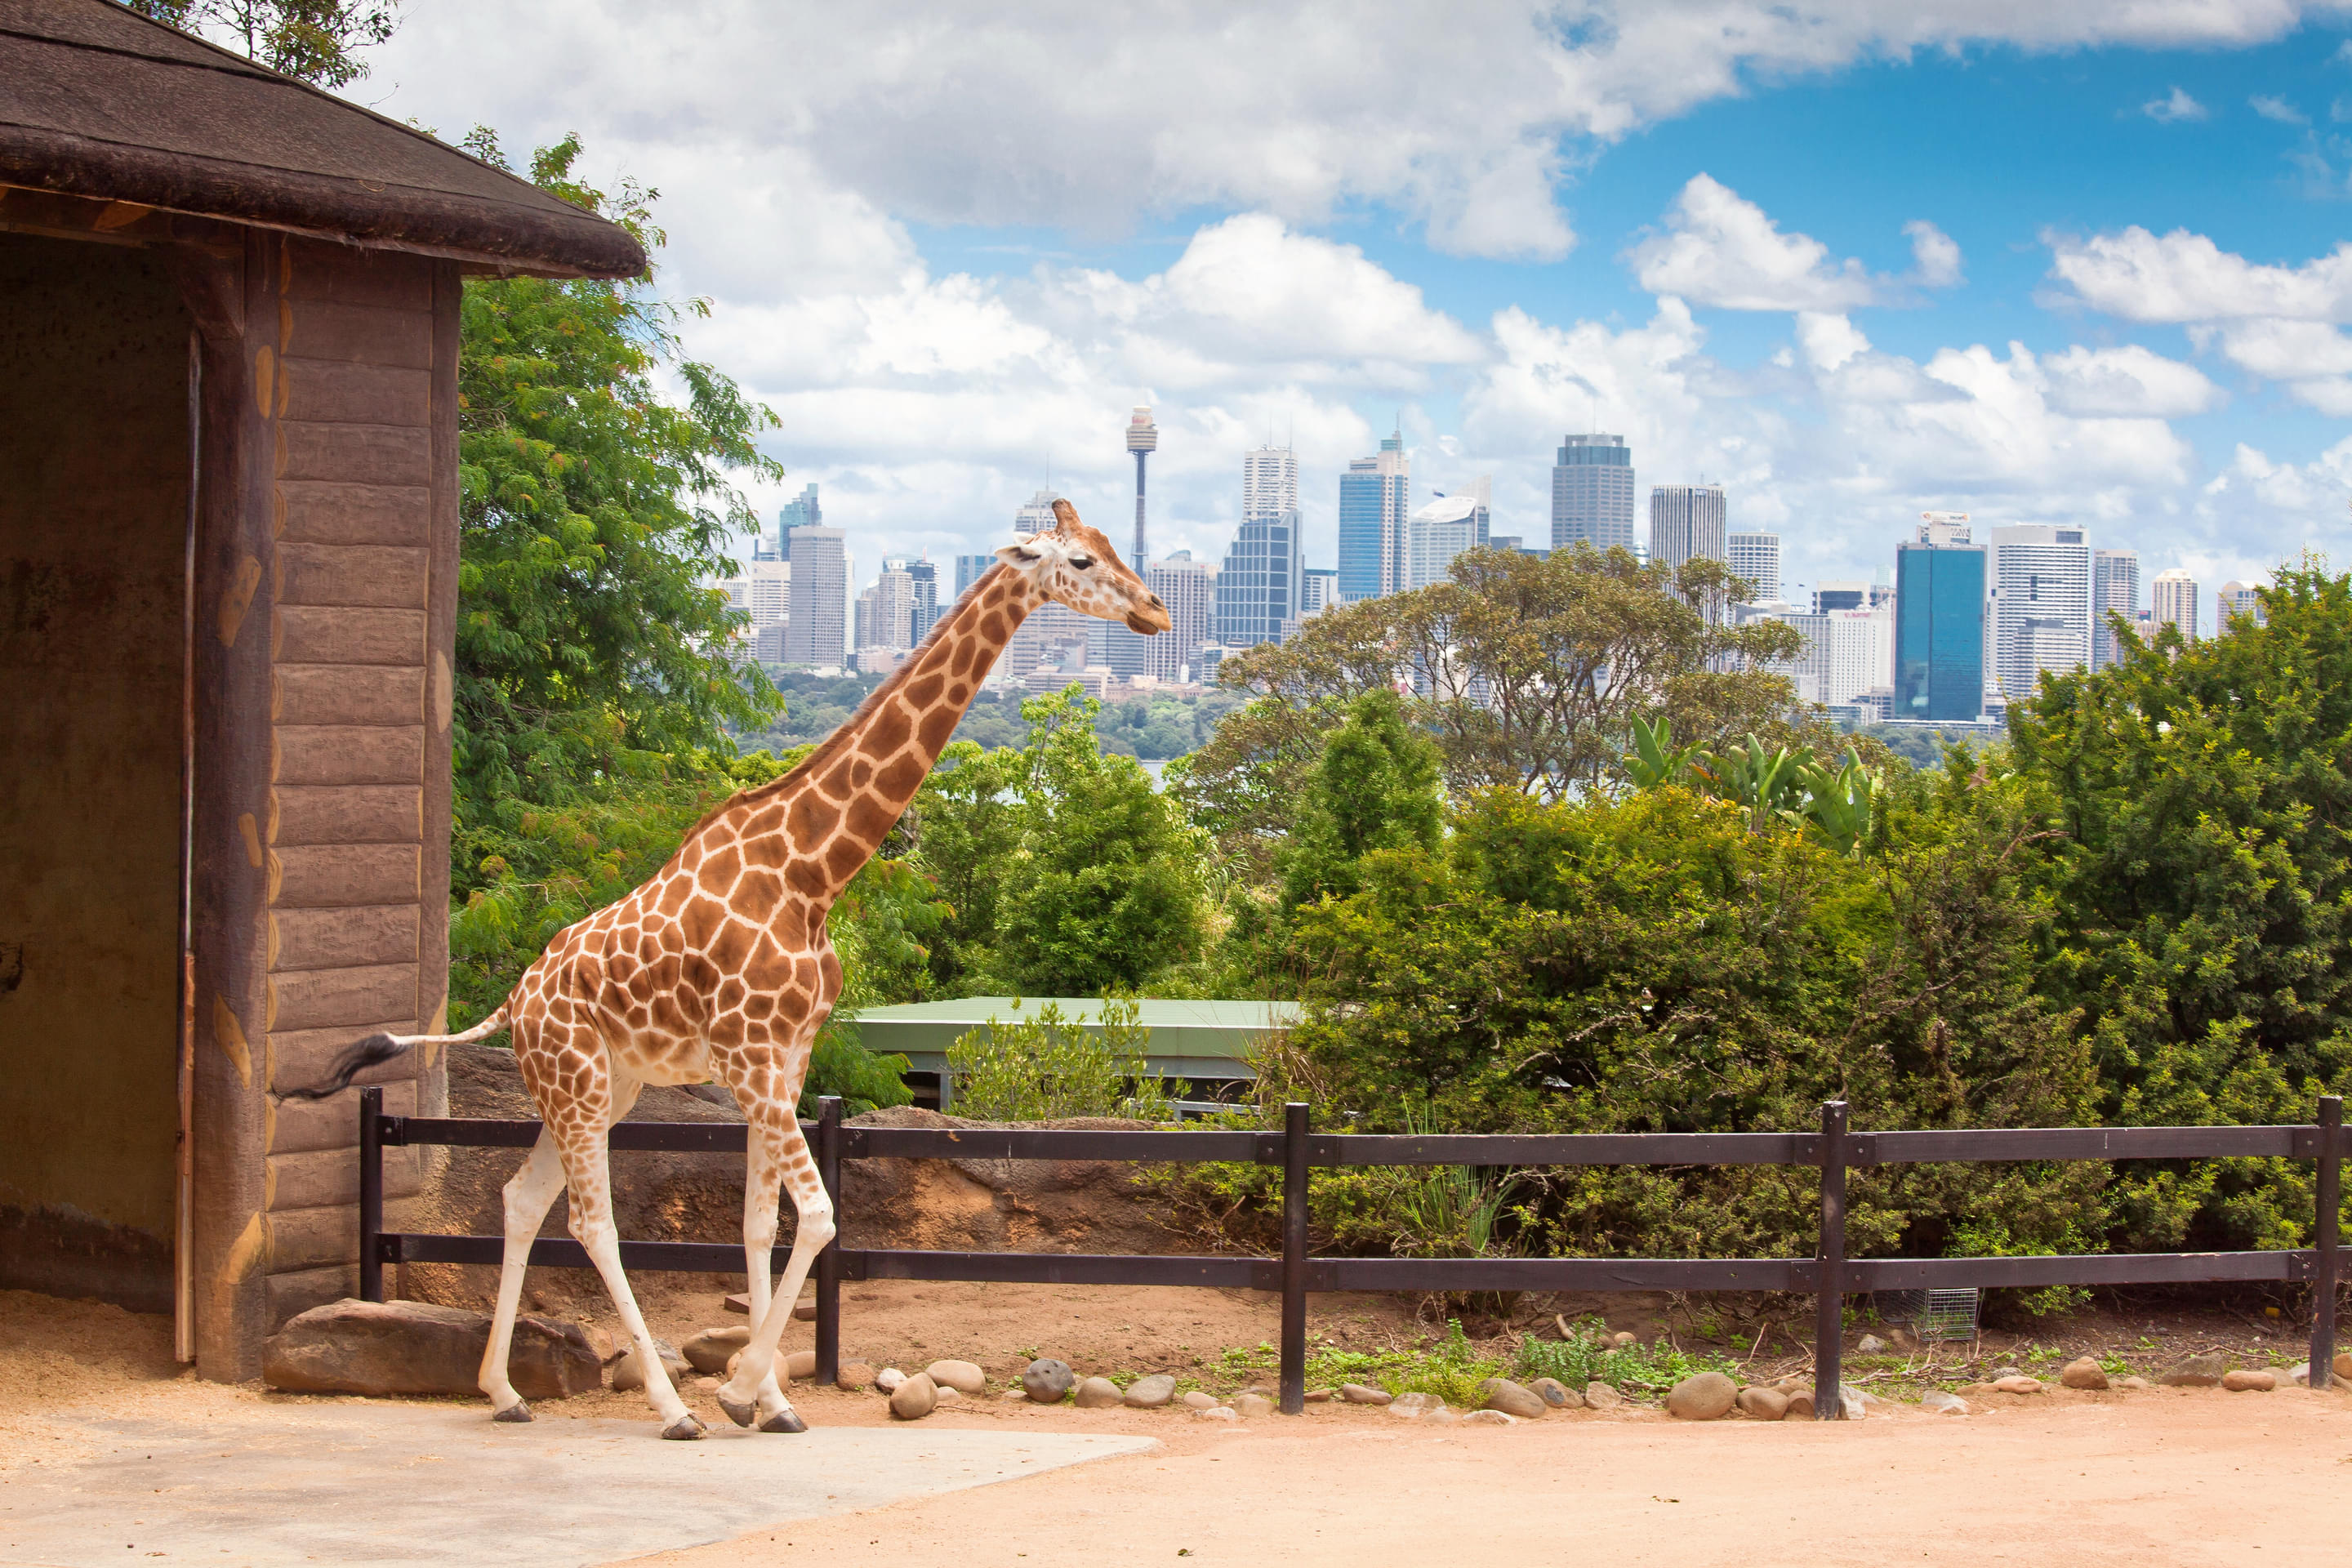 Australia Zoo Overview